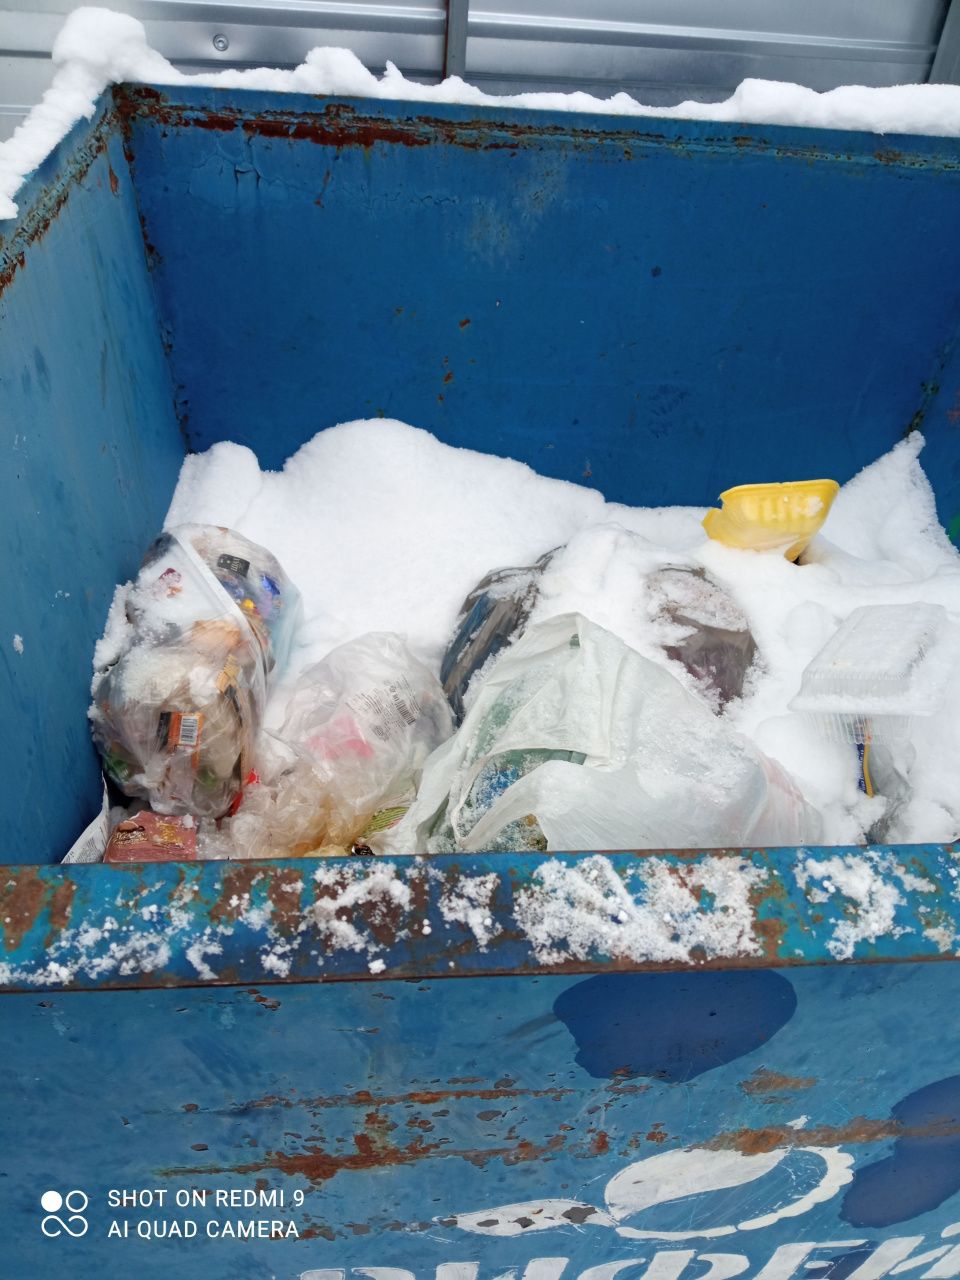 Жительница Всеволодо-Благодатского: мусоровозы приезжают два раза в неделю, но мусор не забирают. Воздух возят?